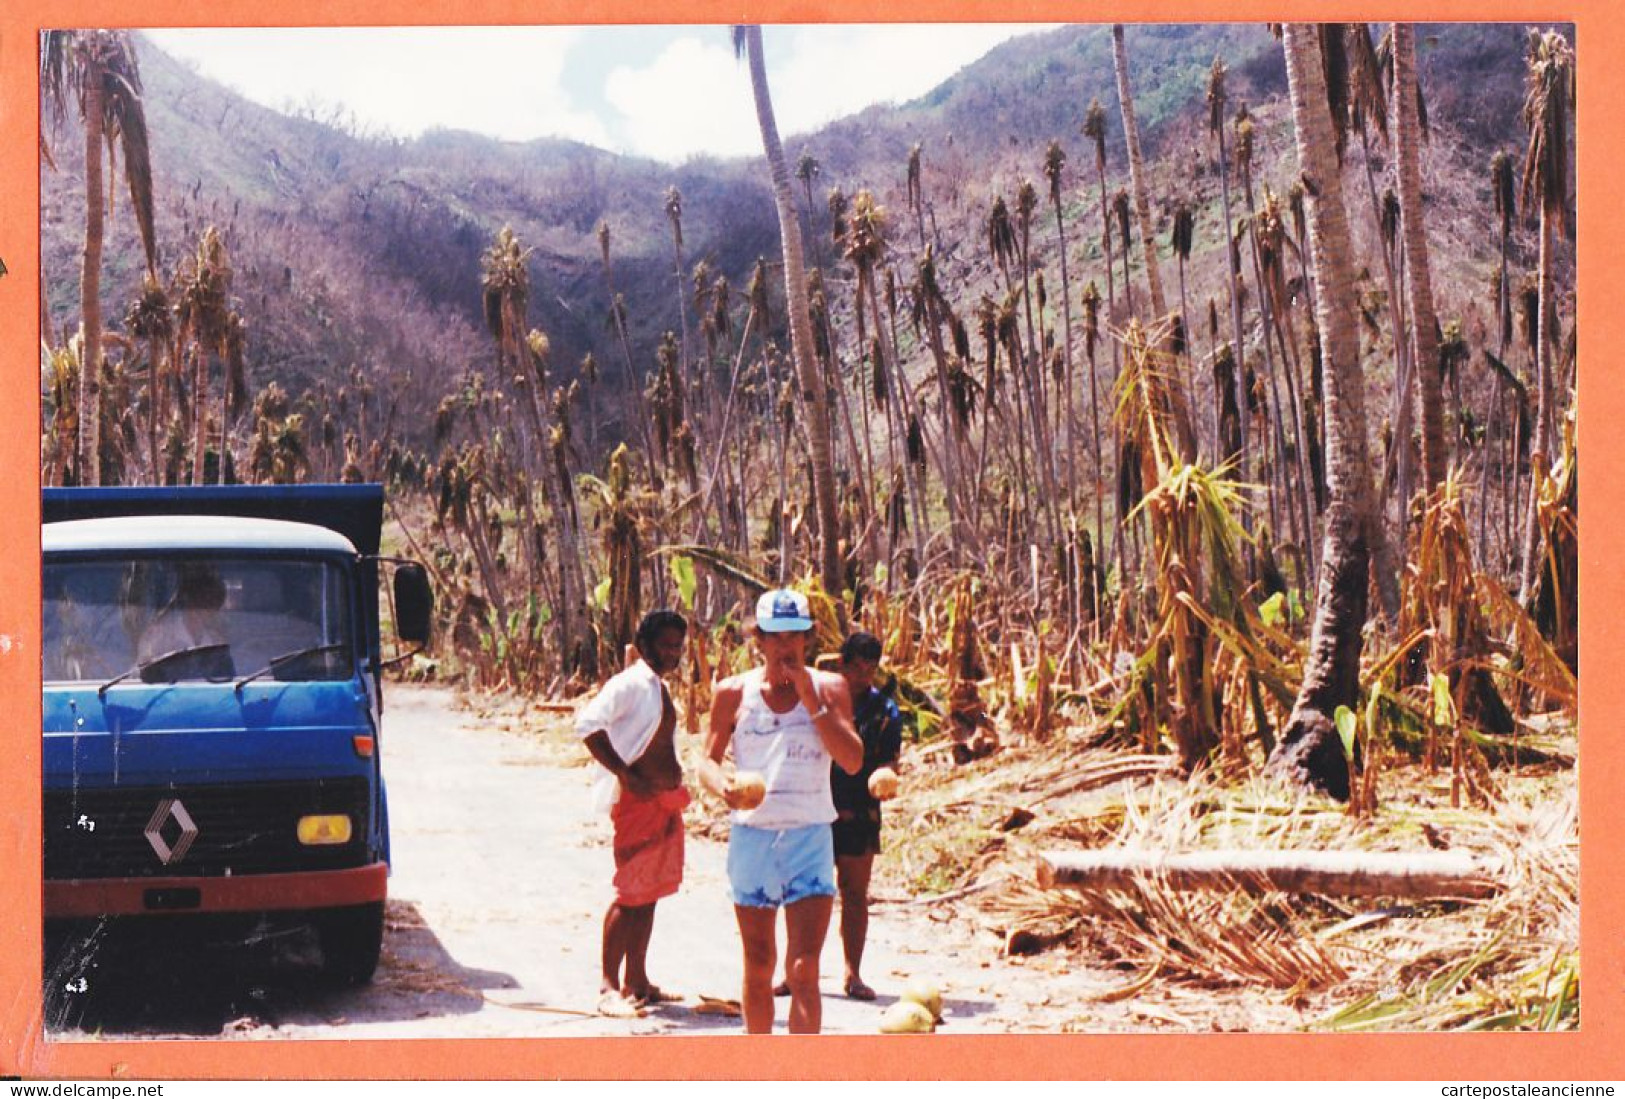 16243 / WALLIS Et FUTUNA Camion RENAULT Foret Palmiers Après Cyclone 1990s Photographie 15x10cm - Wallis Et Futuna